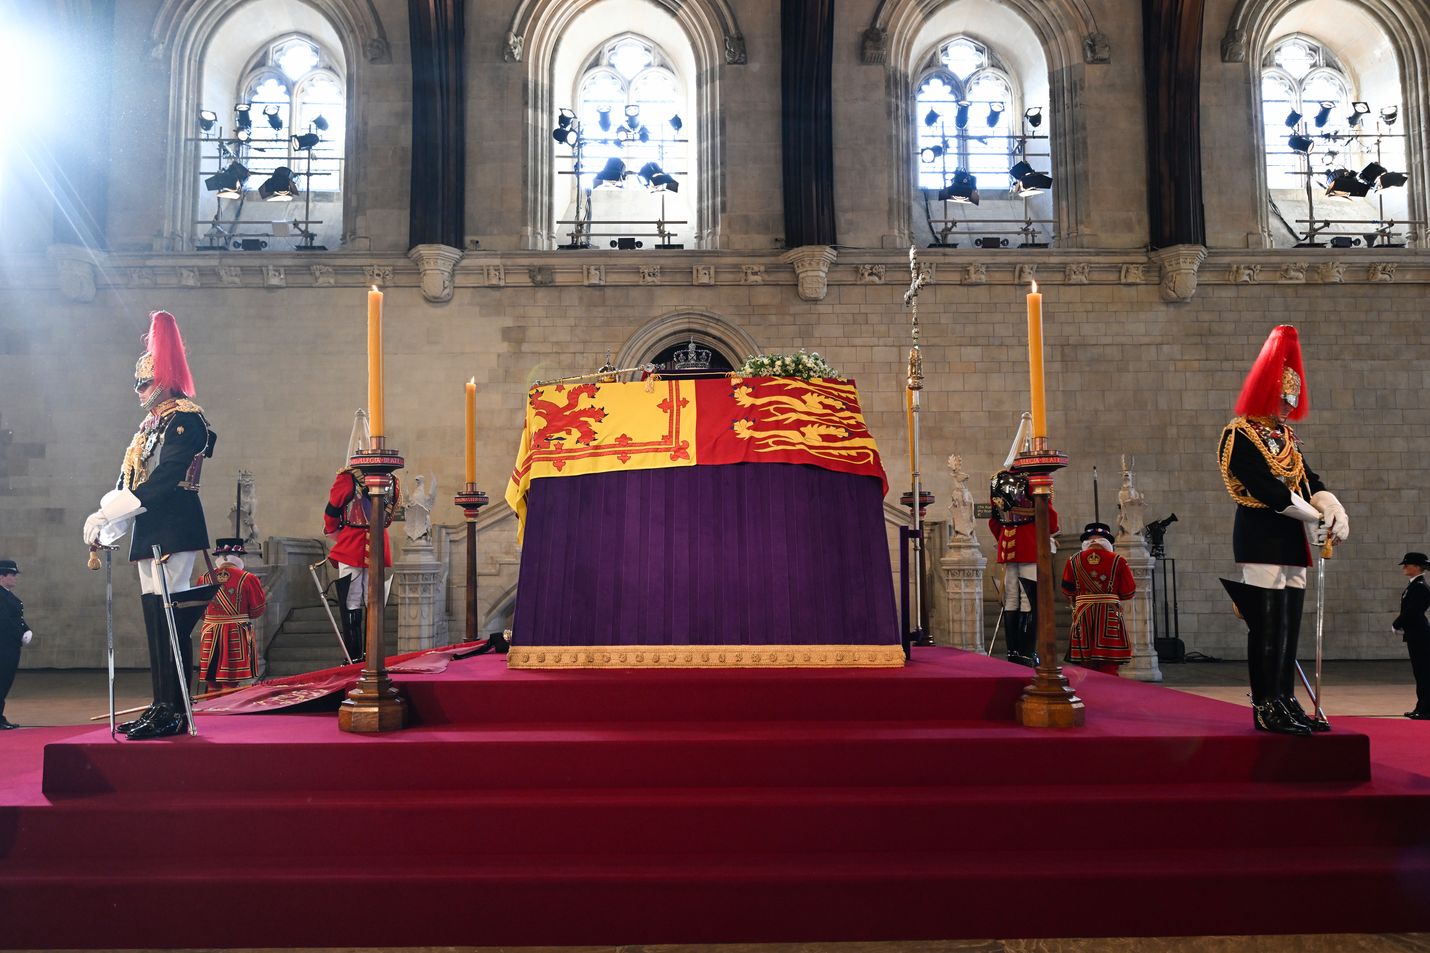 Englannin kuningattaren Elisabet II:n hautajaiset järjestetään Westminster Abbeyssä maanantaina. Kuningattaren hautaustilaisuus pidetään kuninkaallisen perheen kesken Pyhän Yrjön kappelissa, Windsorin linnassa. Kuningatar haudataan isänsä kuningas Yrjö VI:n, siskonsa prinsessa Margaretin ja miehensä prinssi Philipin vierelle.